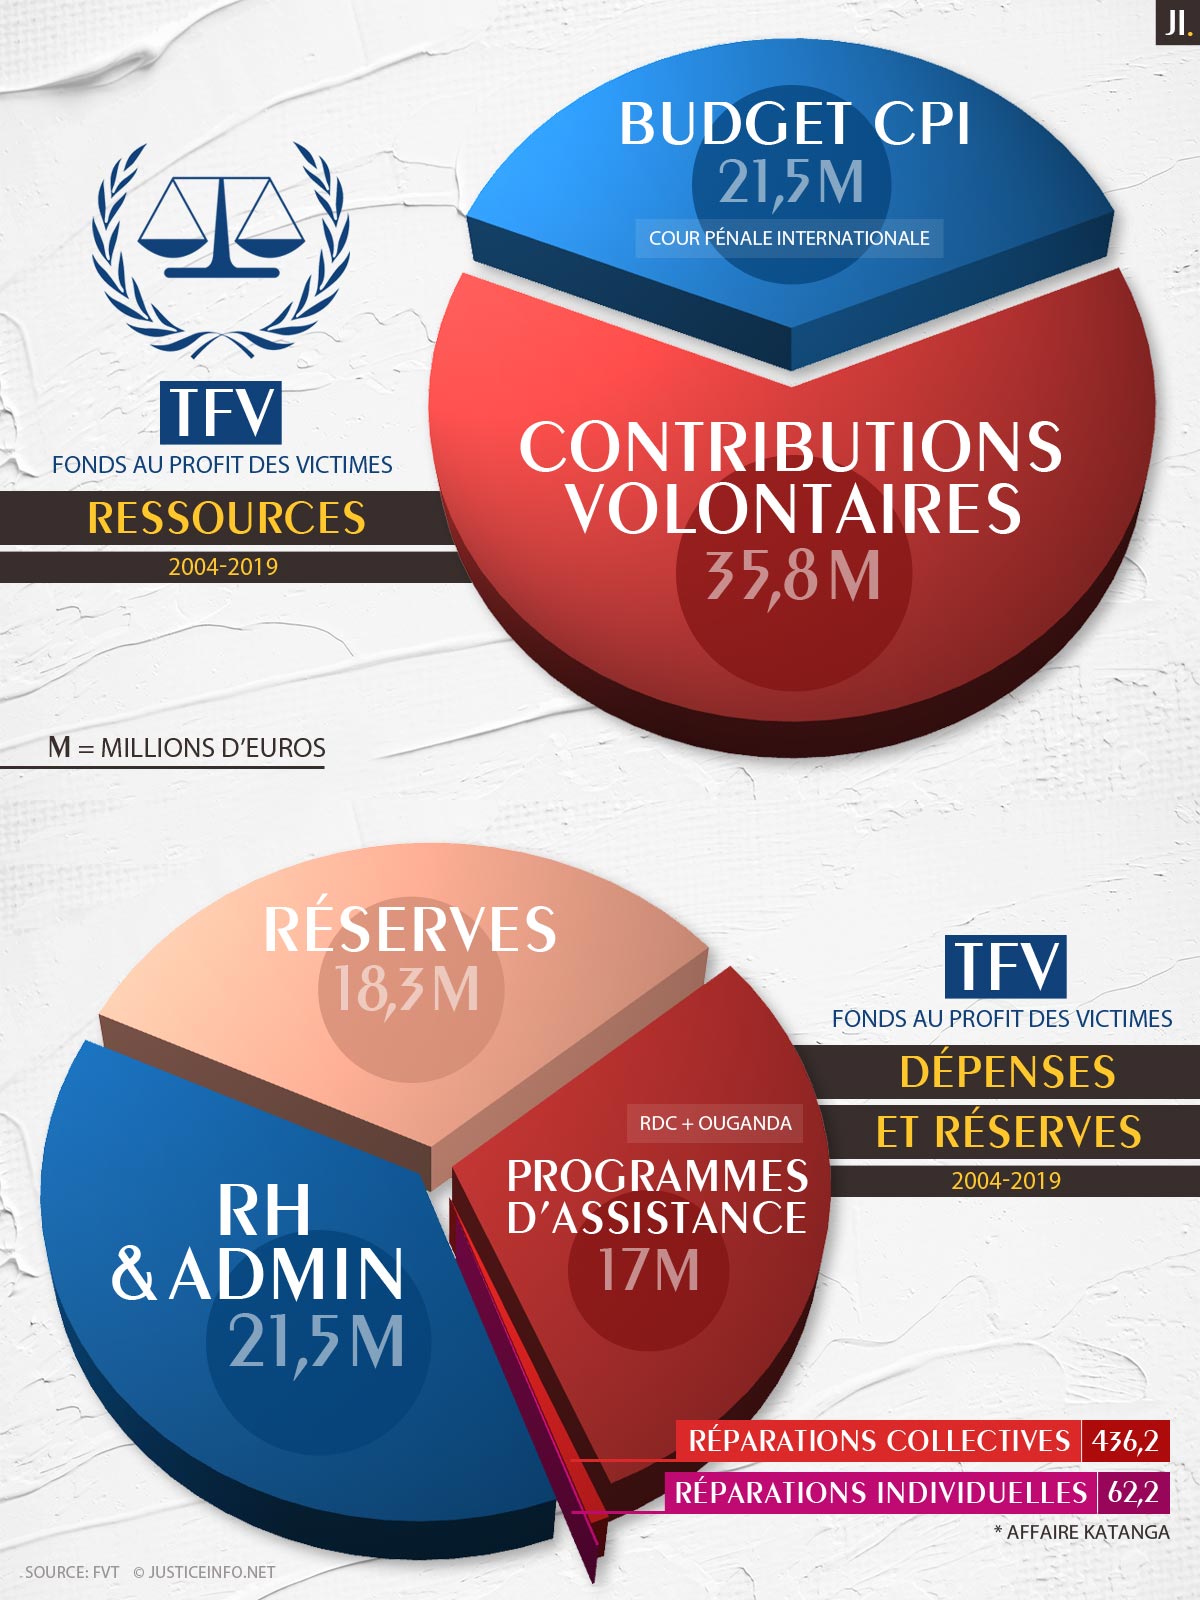 CPI - Fonds au profit des victimes (infographie)